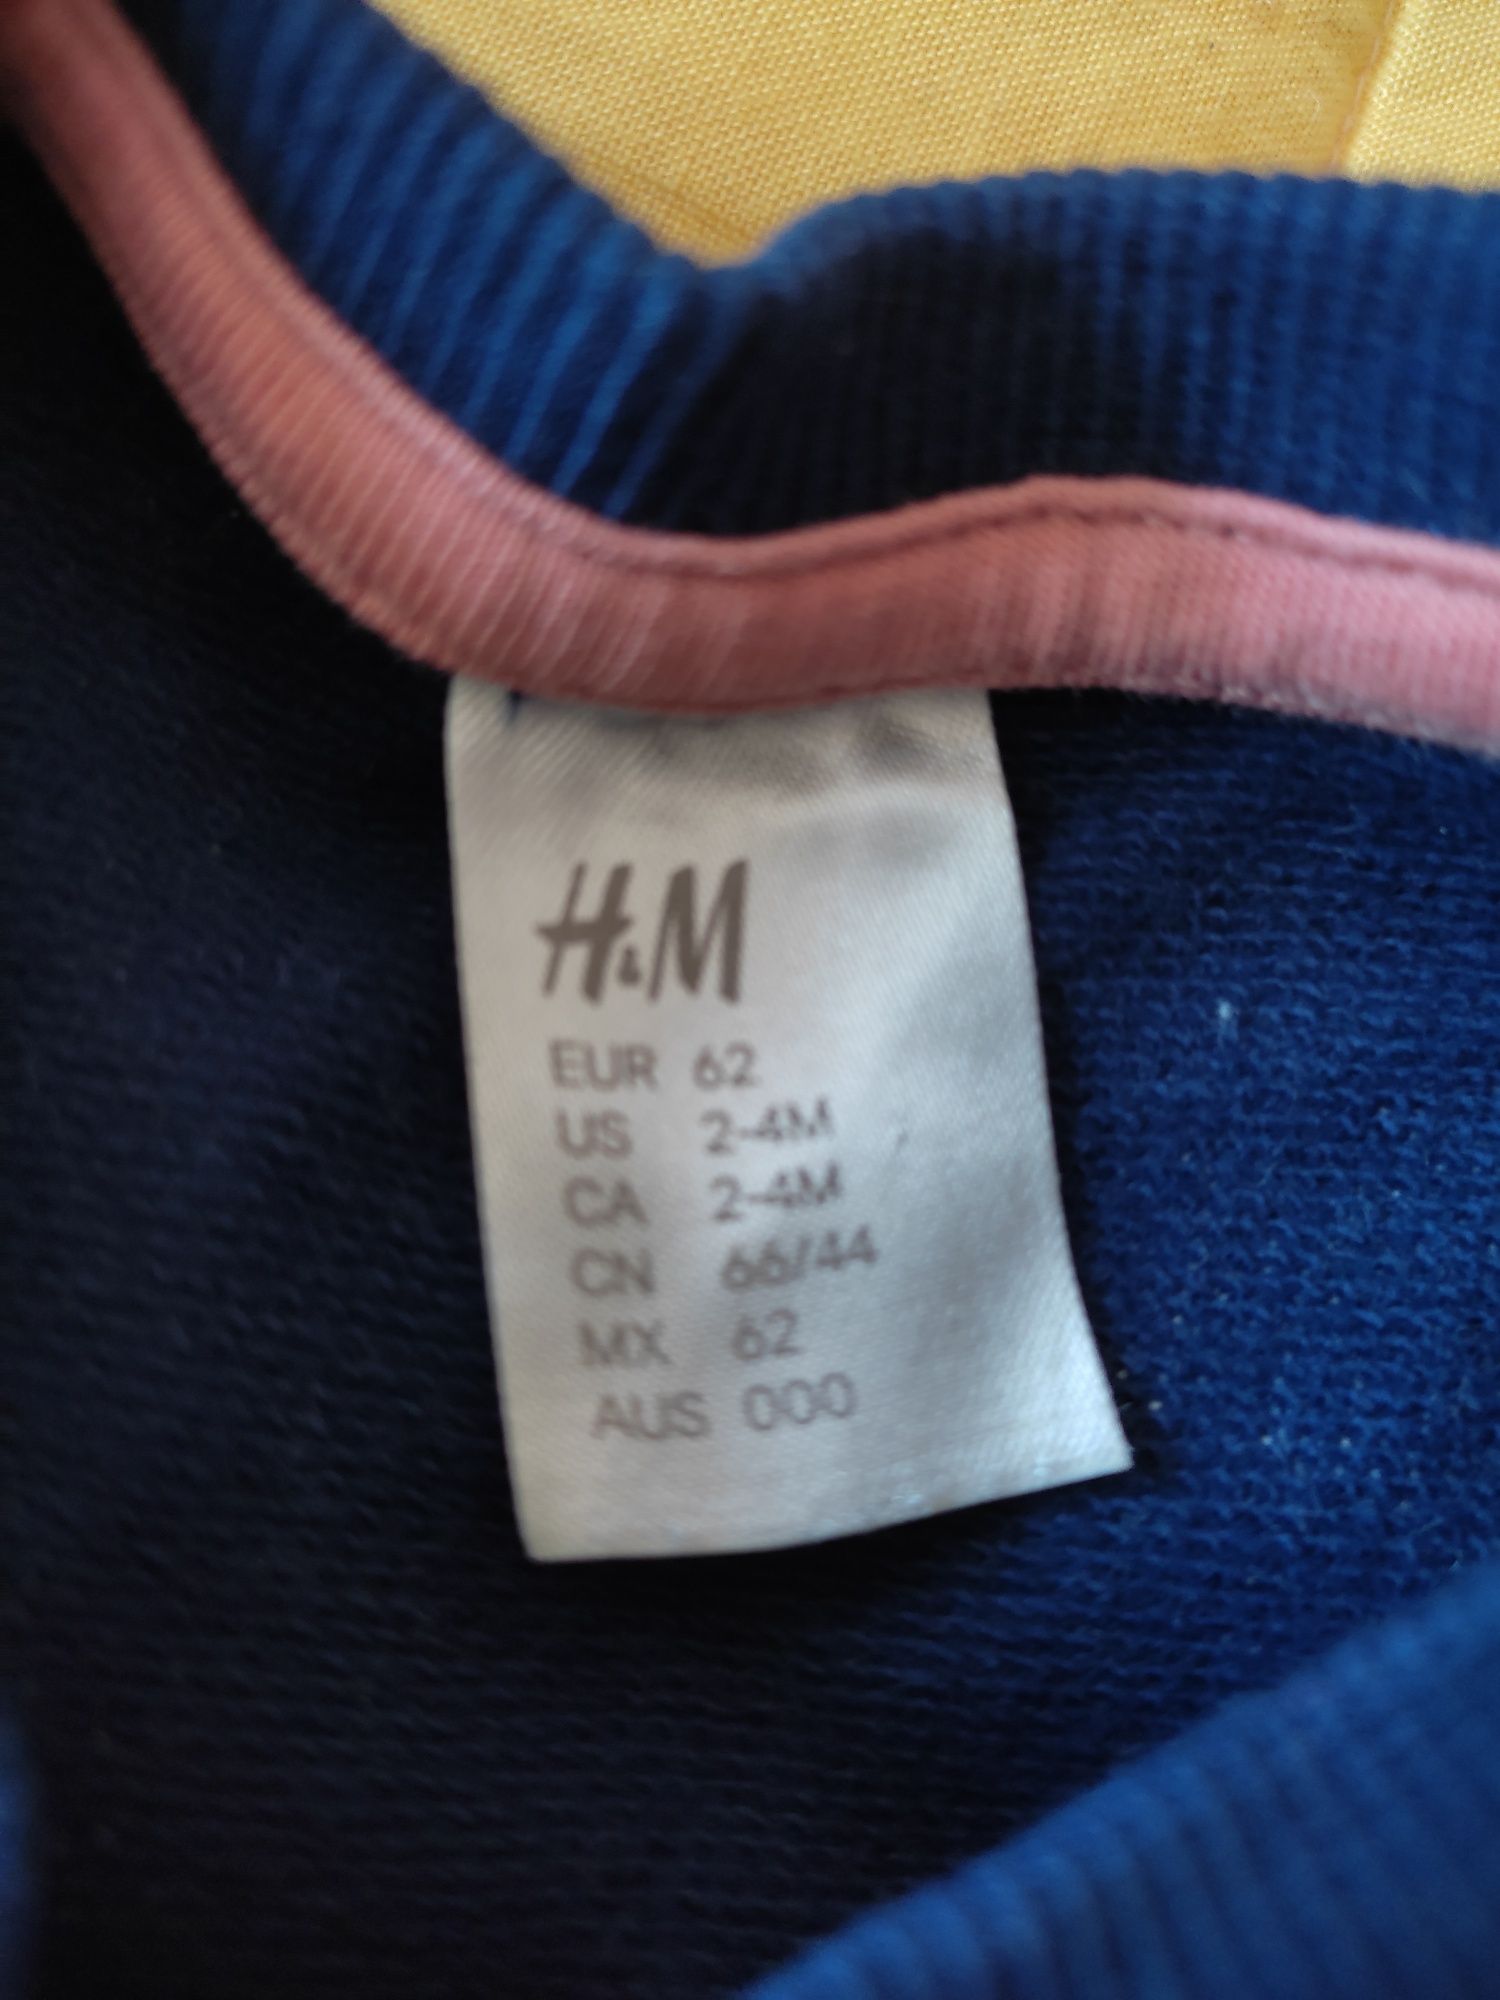 Bluza H&M chmurki 62